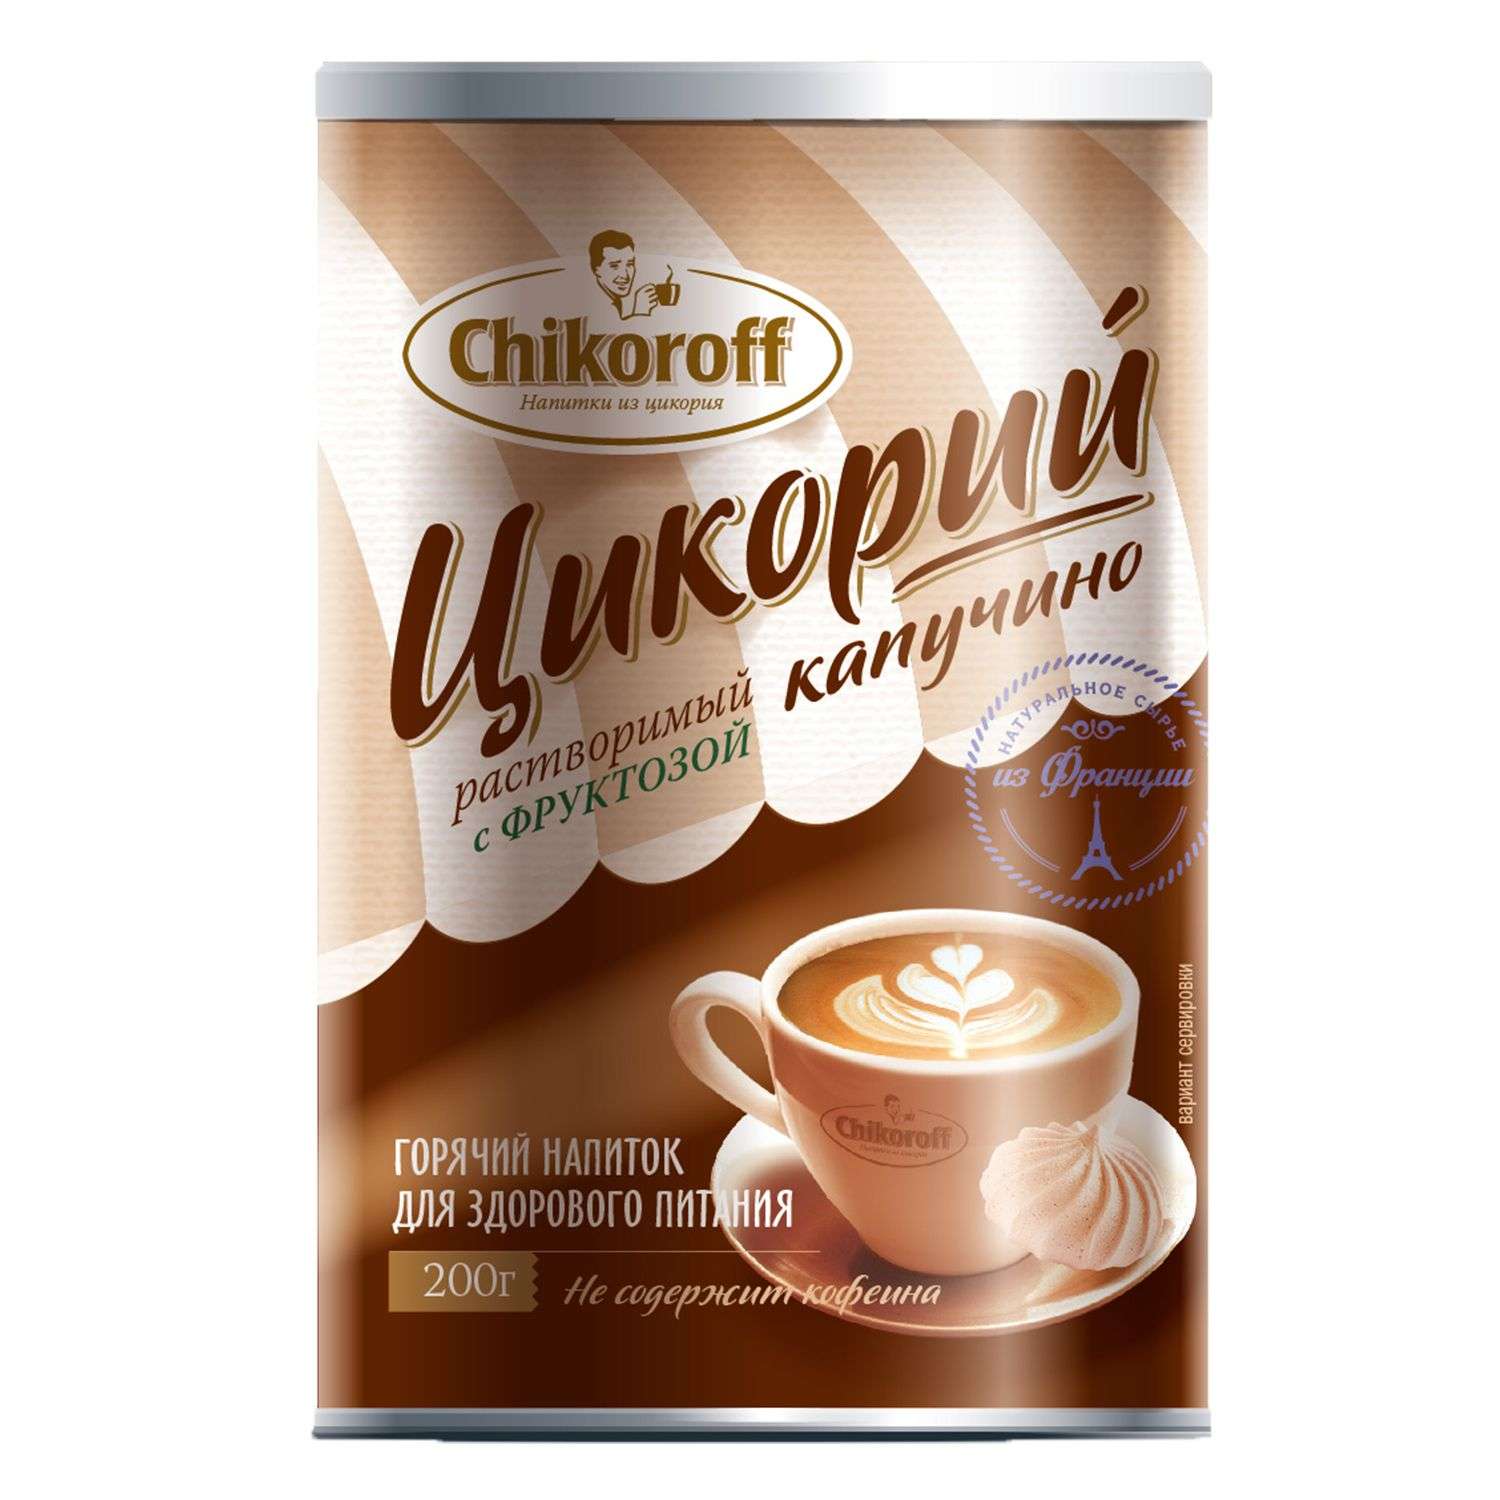 Напиток Chikoroff из цикория Капучино с фруктозой 200г - фото 1